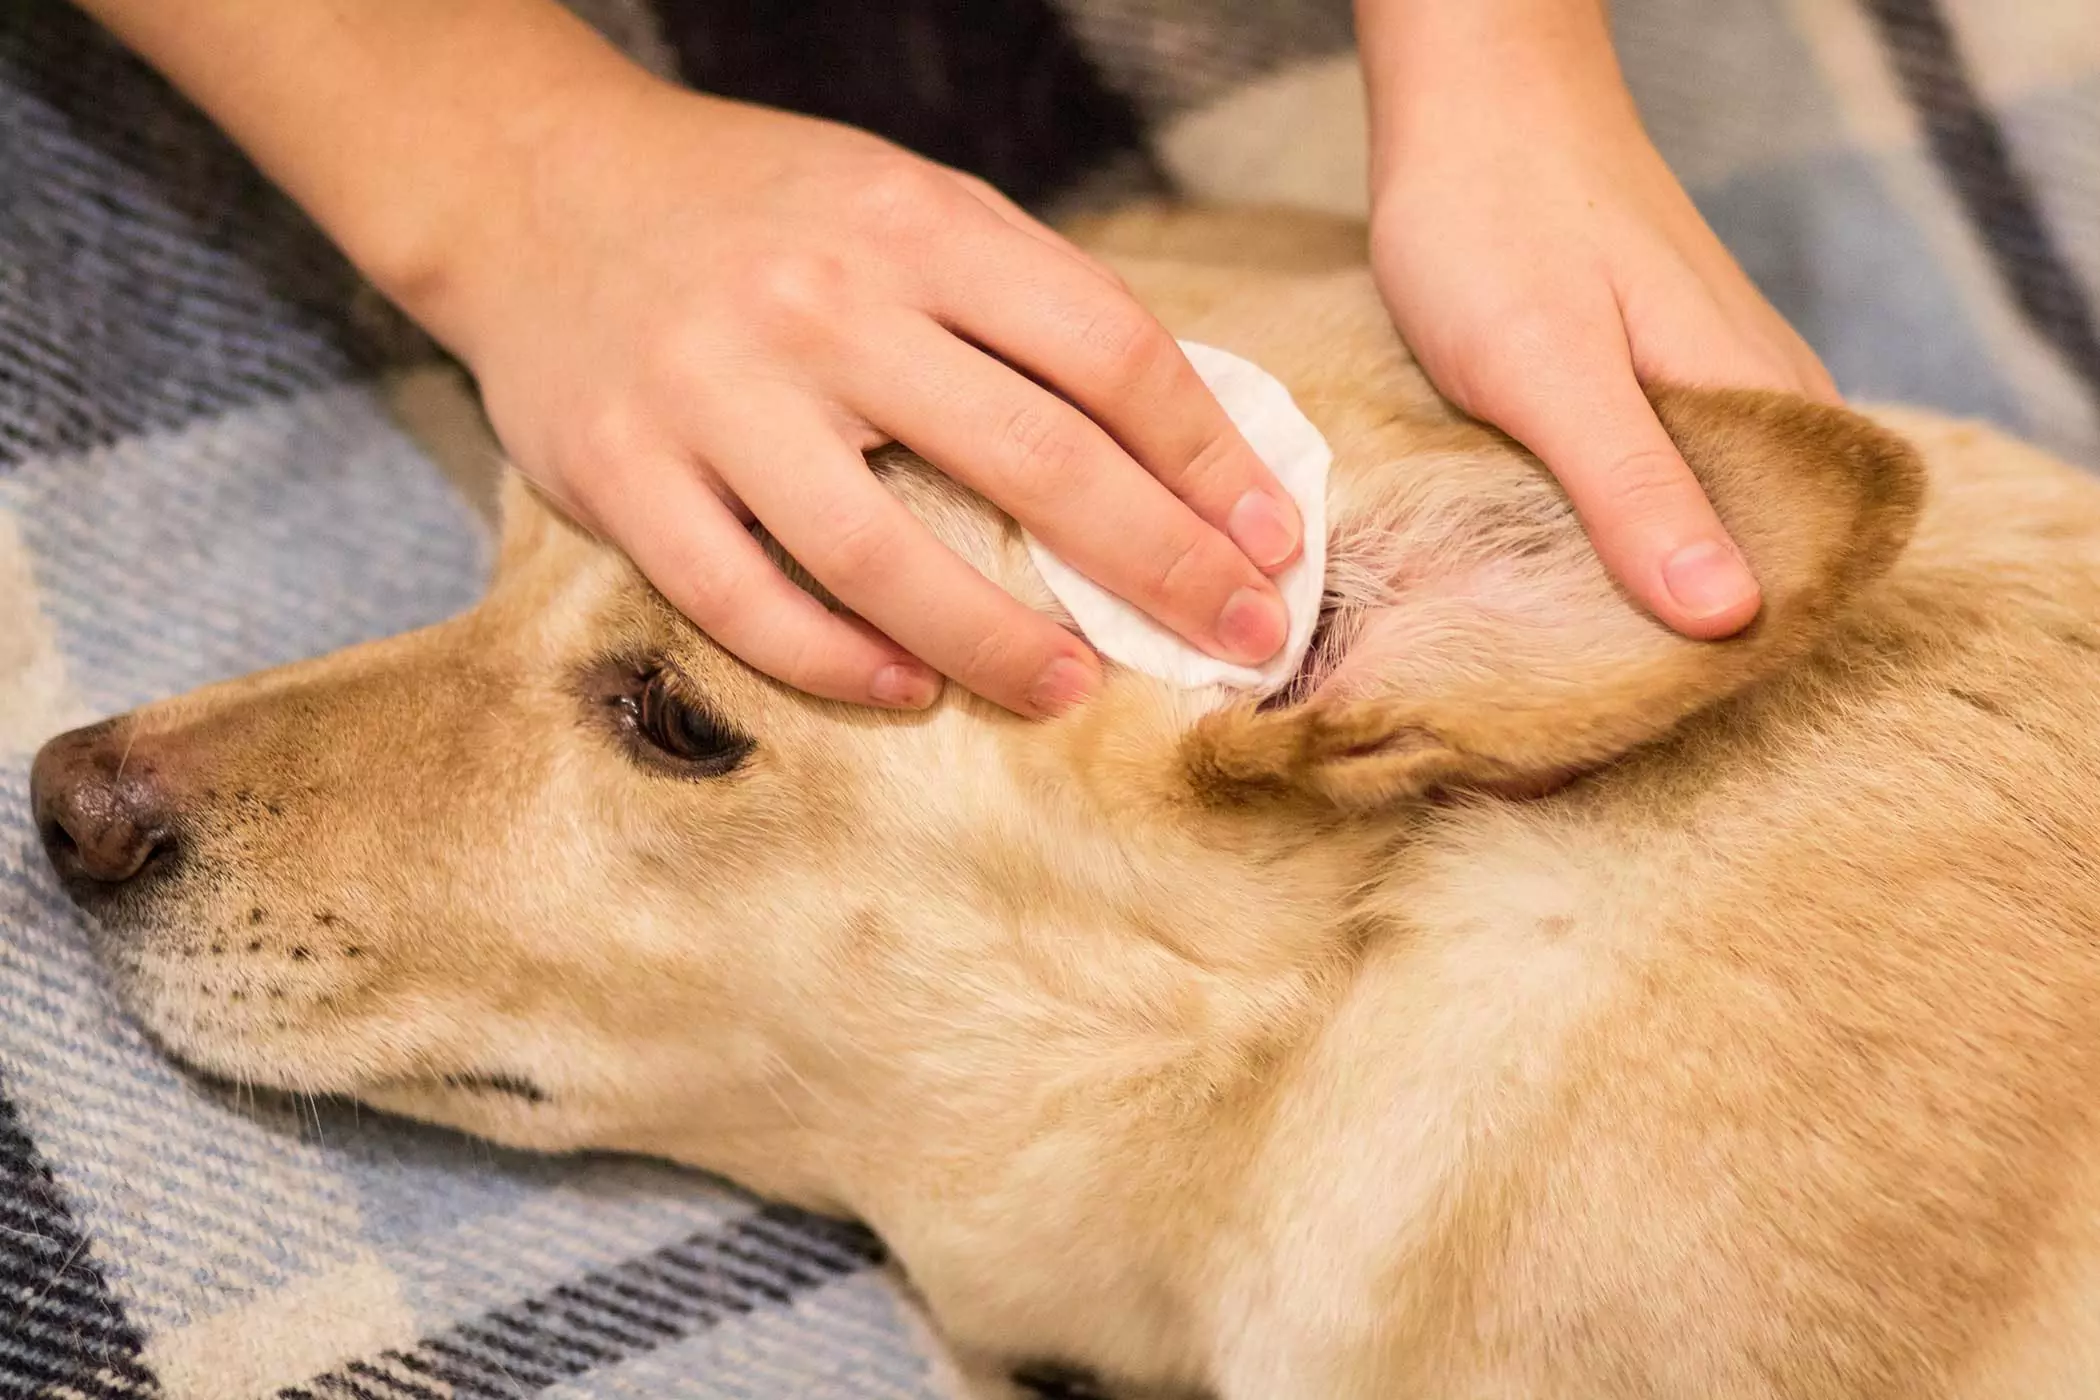 Como limpar as orelhas do seu cão? Então, como limpar correctamente o canal auditivo do seu cão?